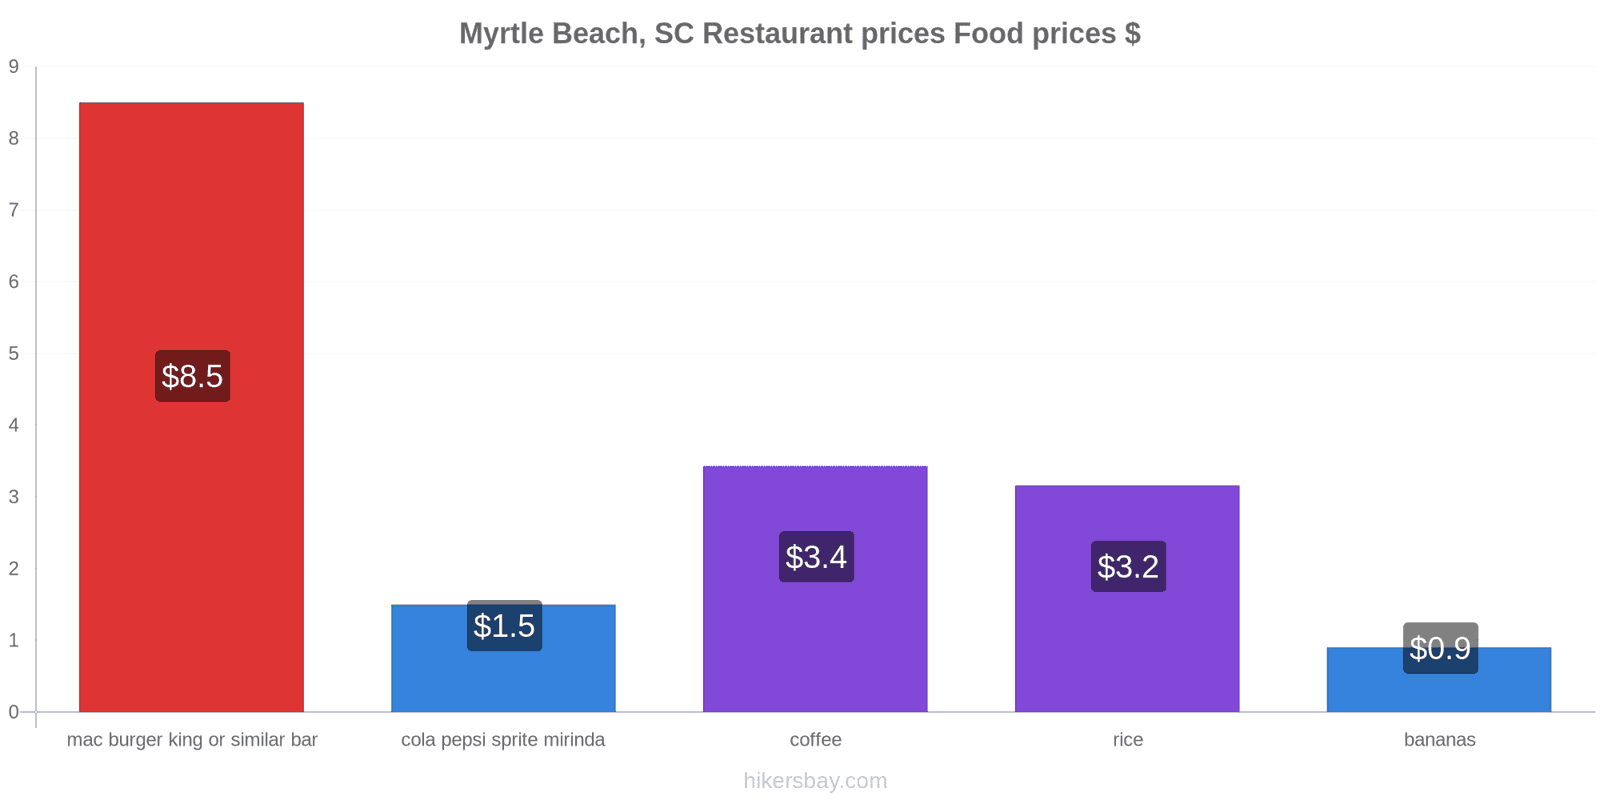 Myrtle Beach, SC price changes hikersbay.com